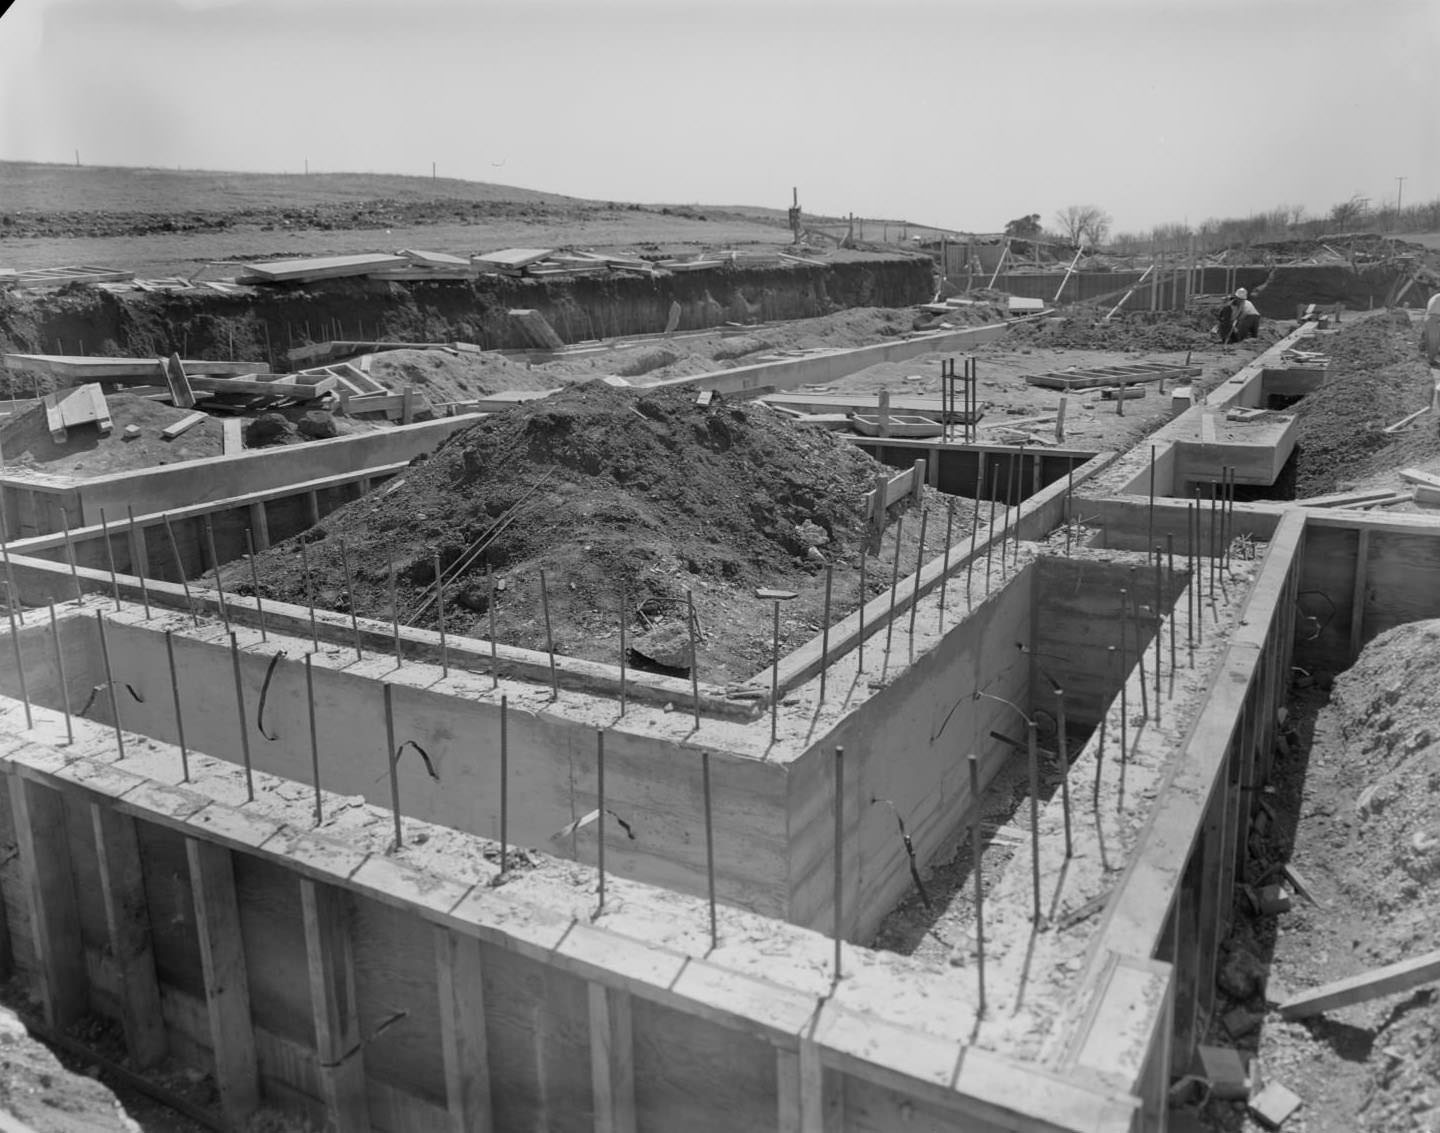 Thomas Residence Hall under construction at St. Edwards University, 1966